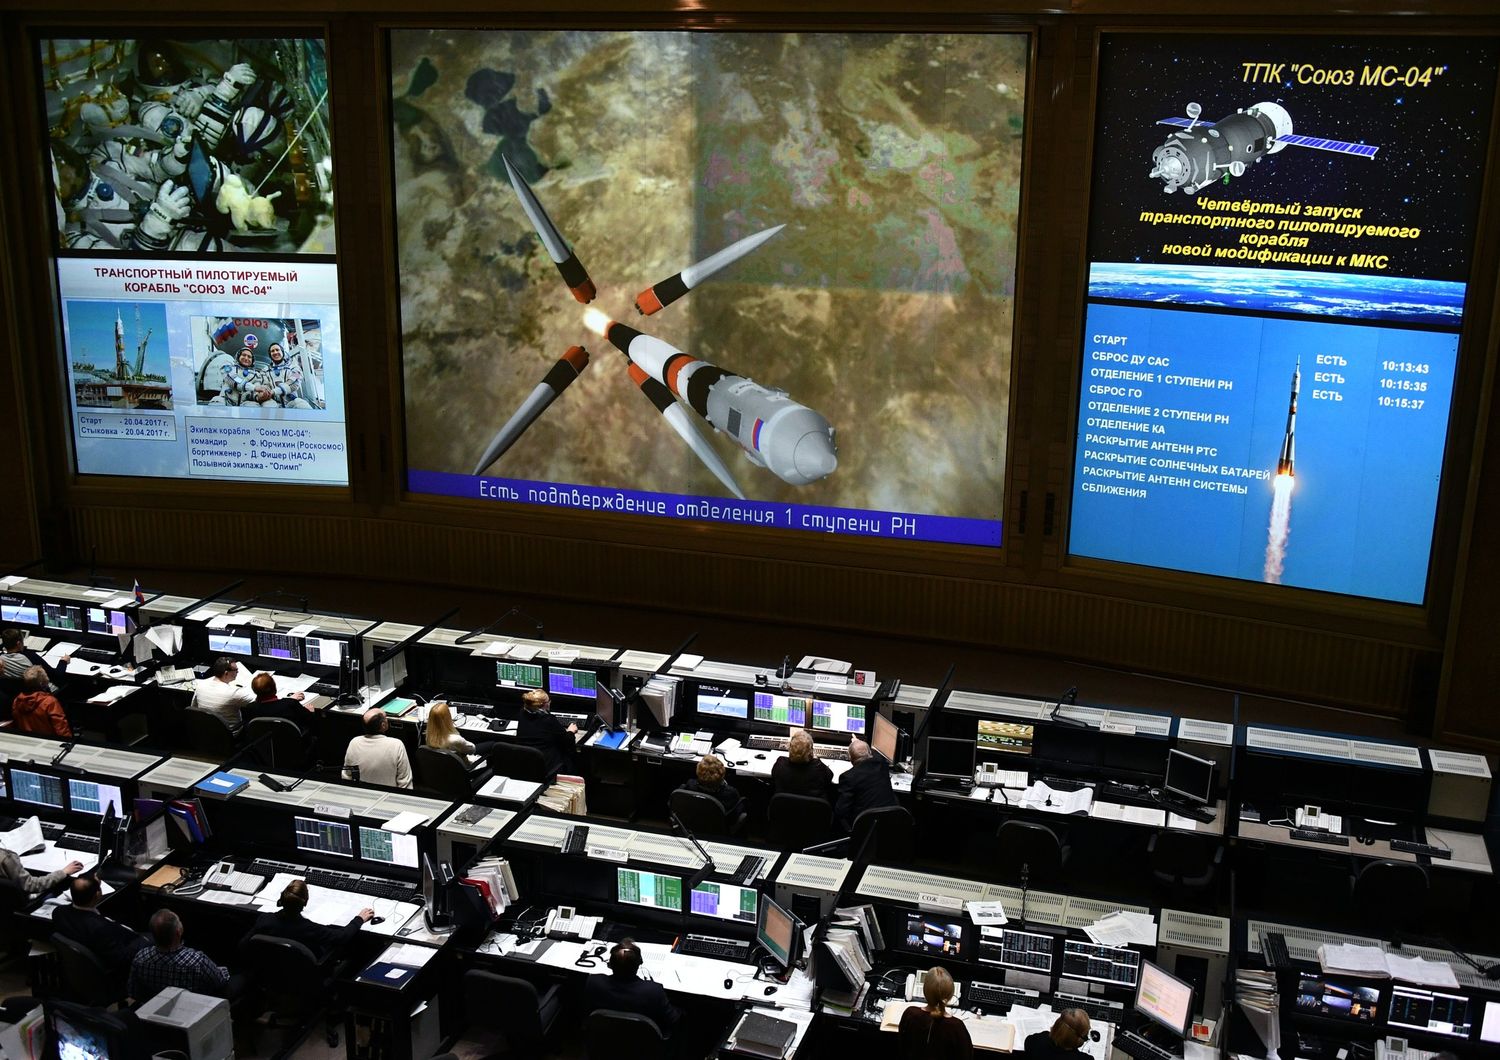 Il comando controllo missione durante un attracco della Soyuz